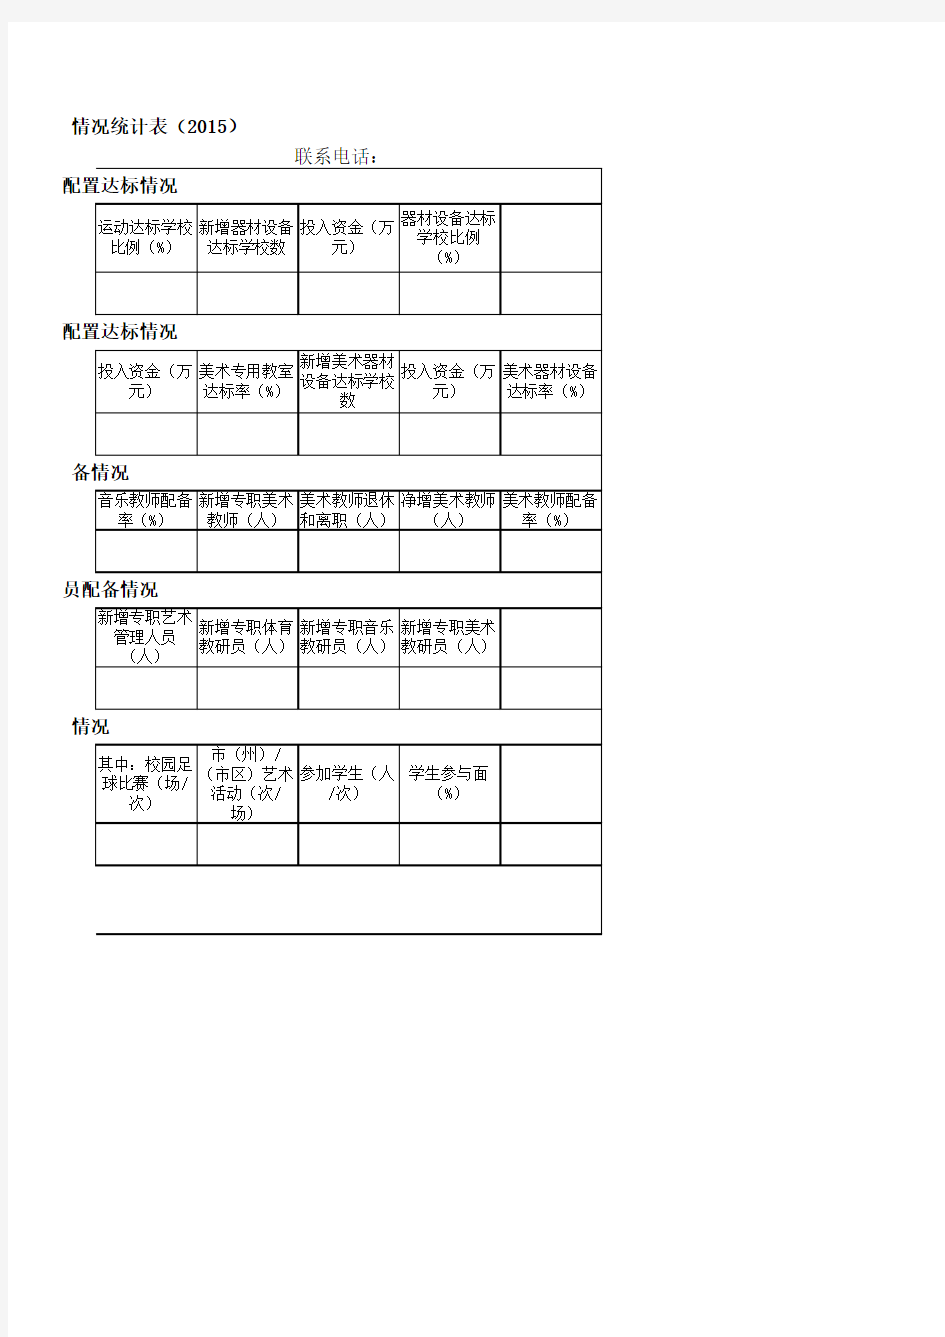 四川省体育艺术五年行动计划年度推进情况统计表(2015) Microsoft Excel 工作表